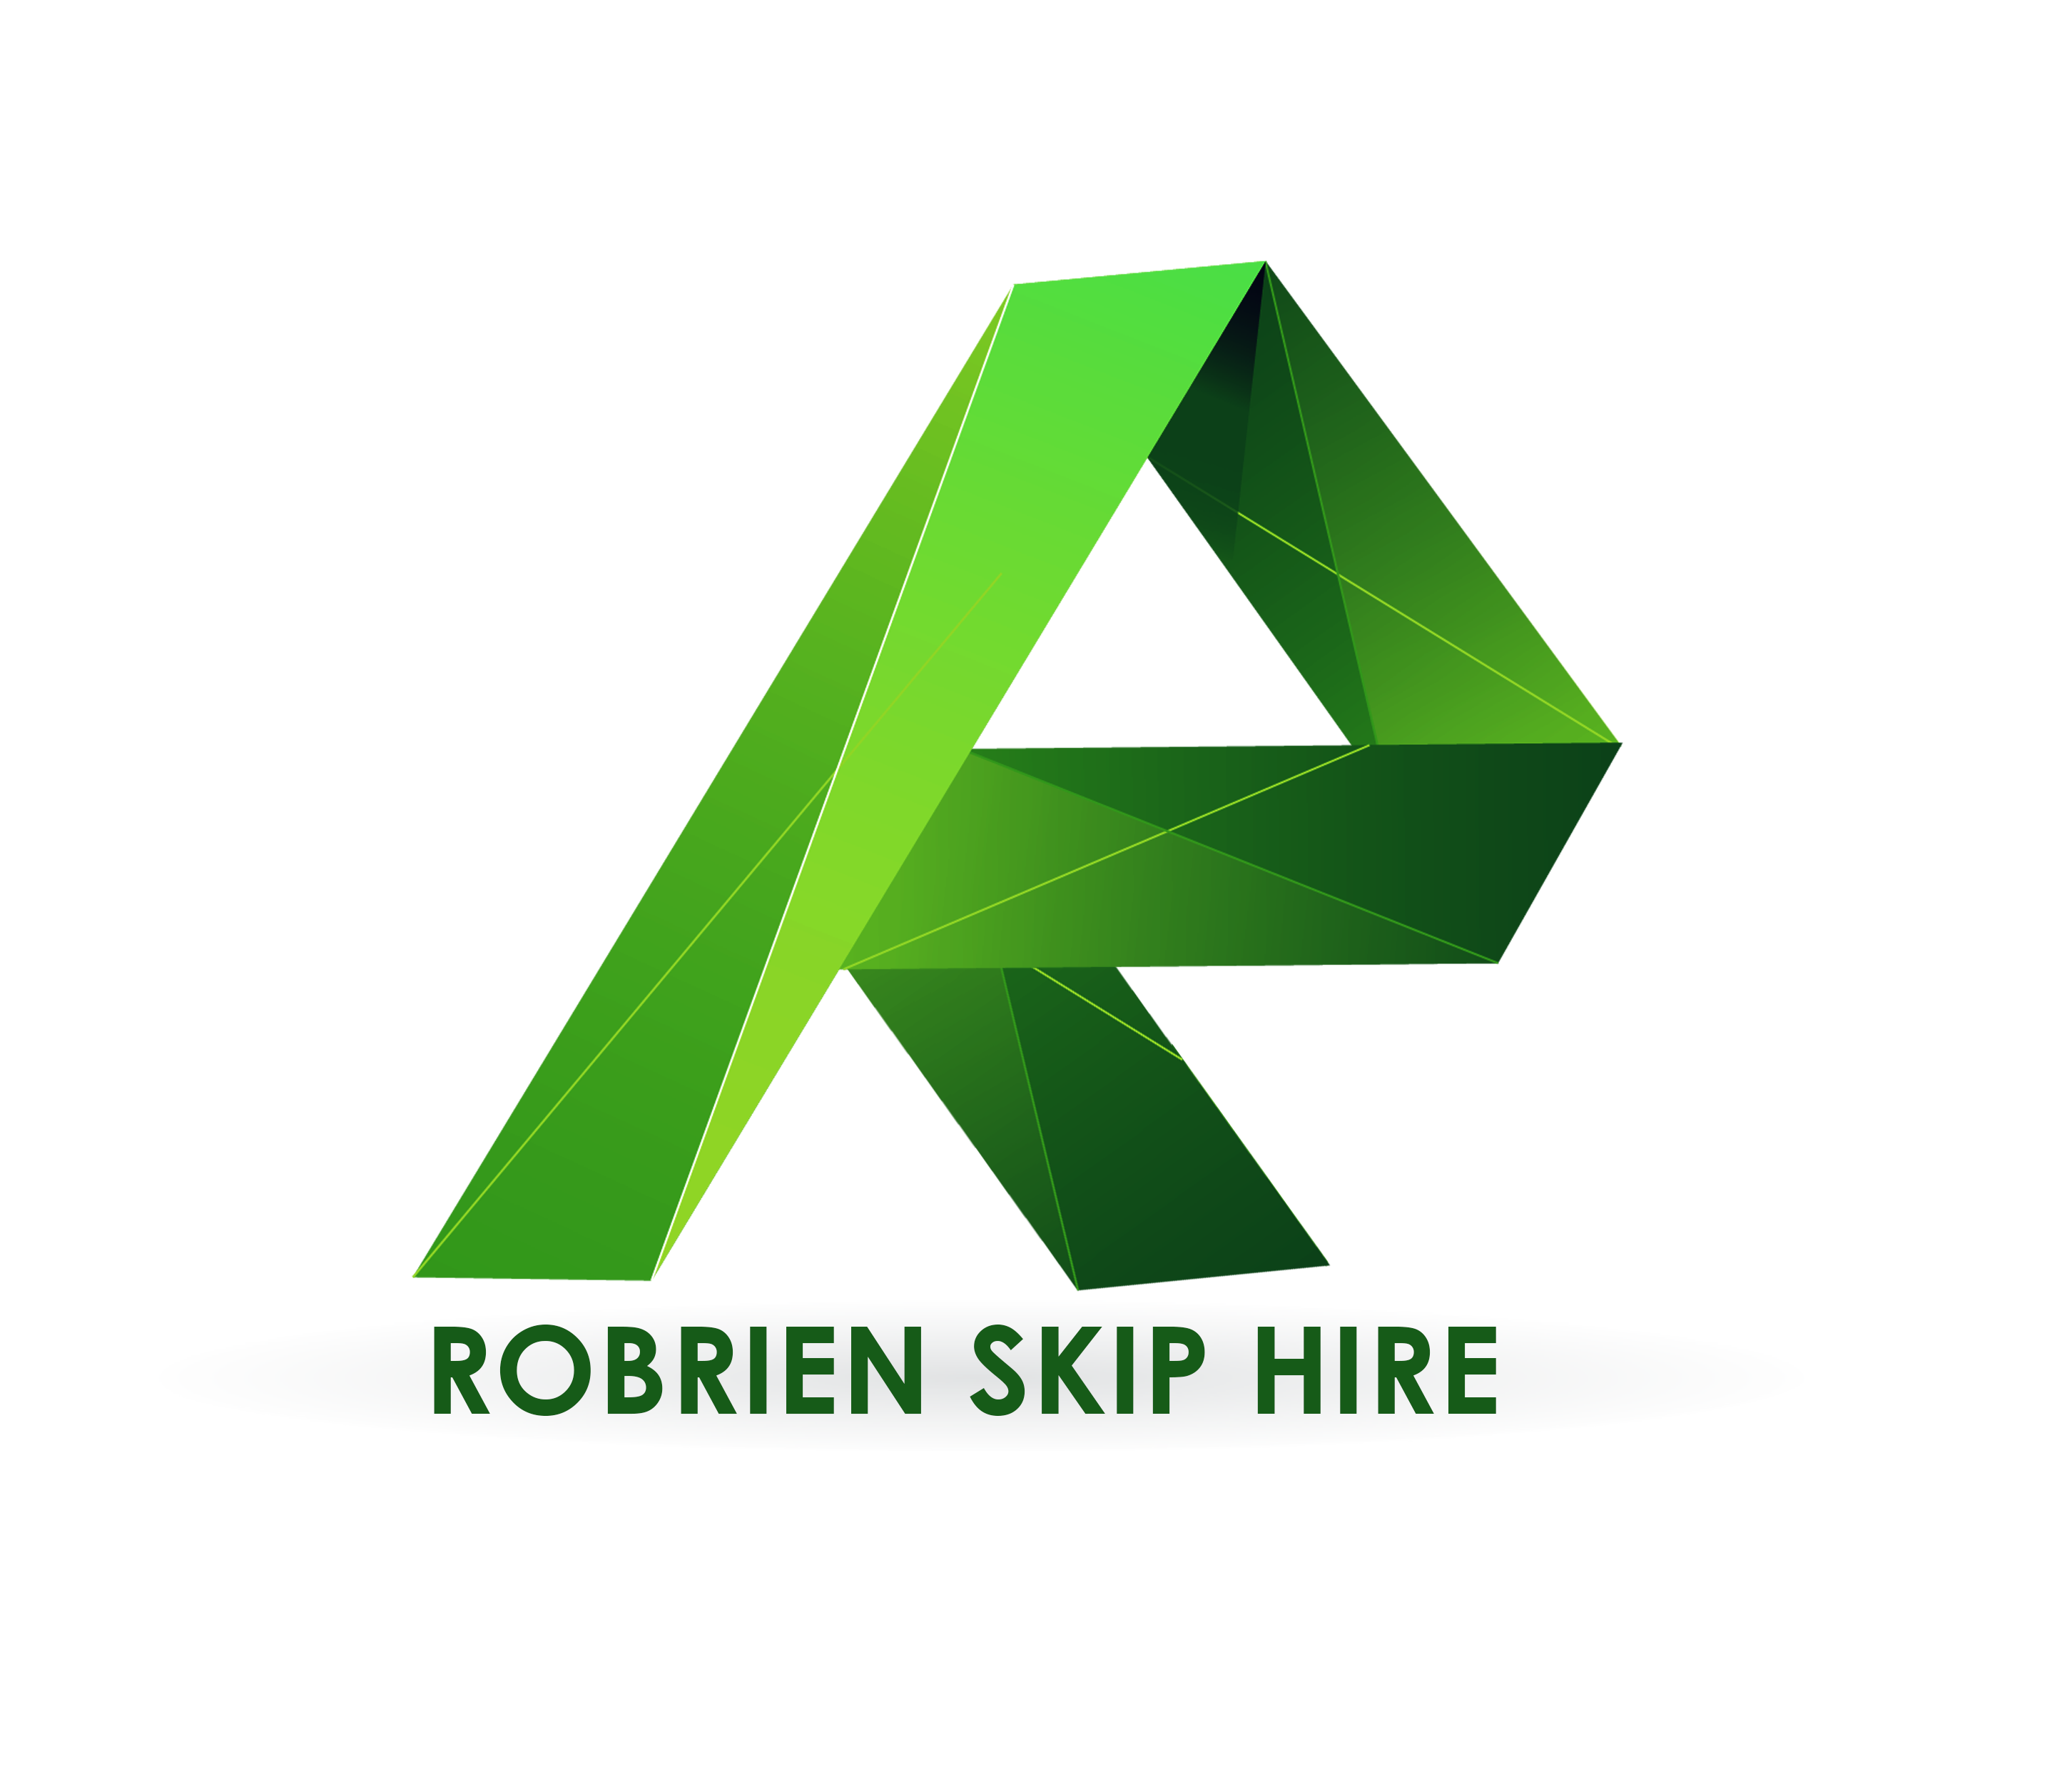 skip hire boston logo